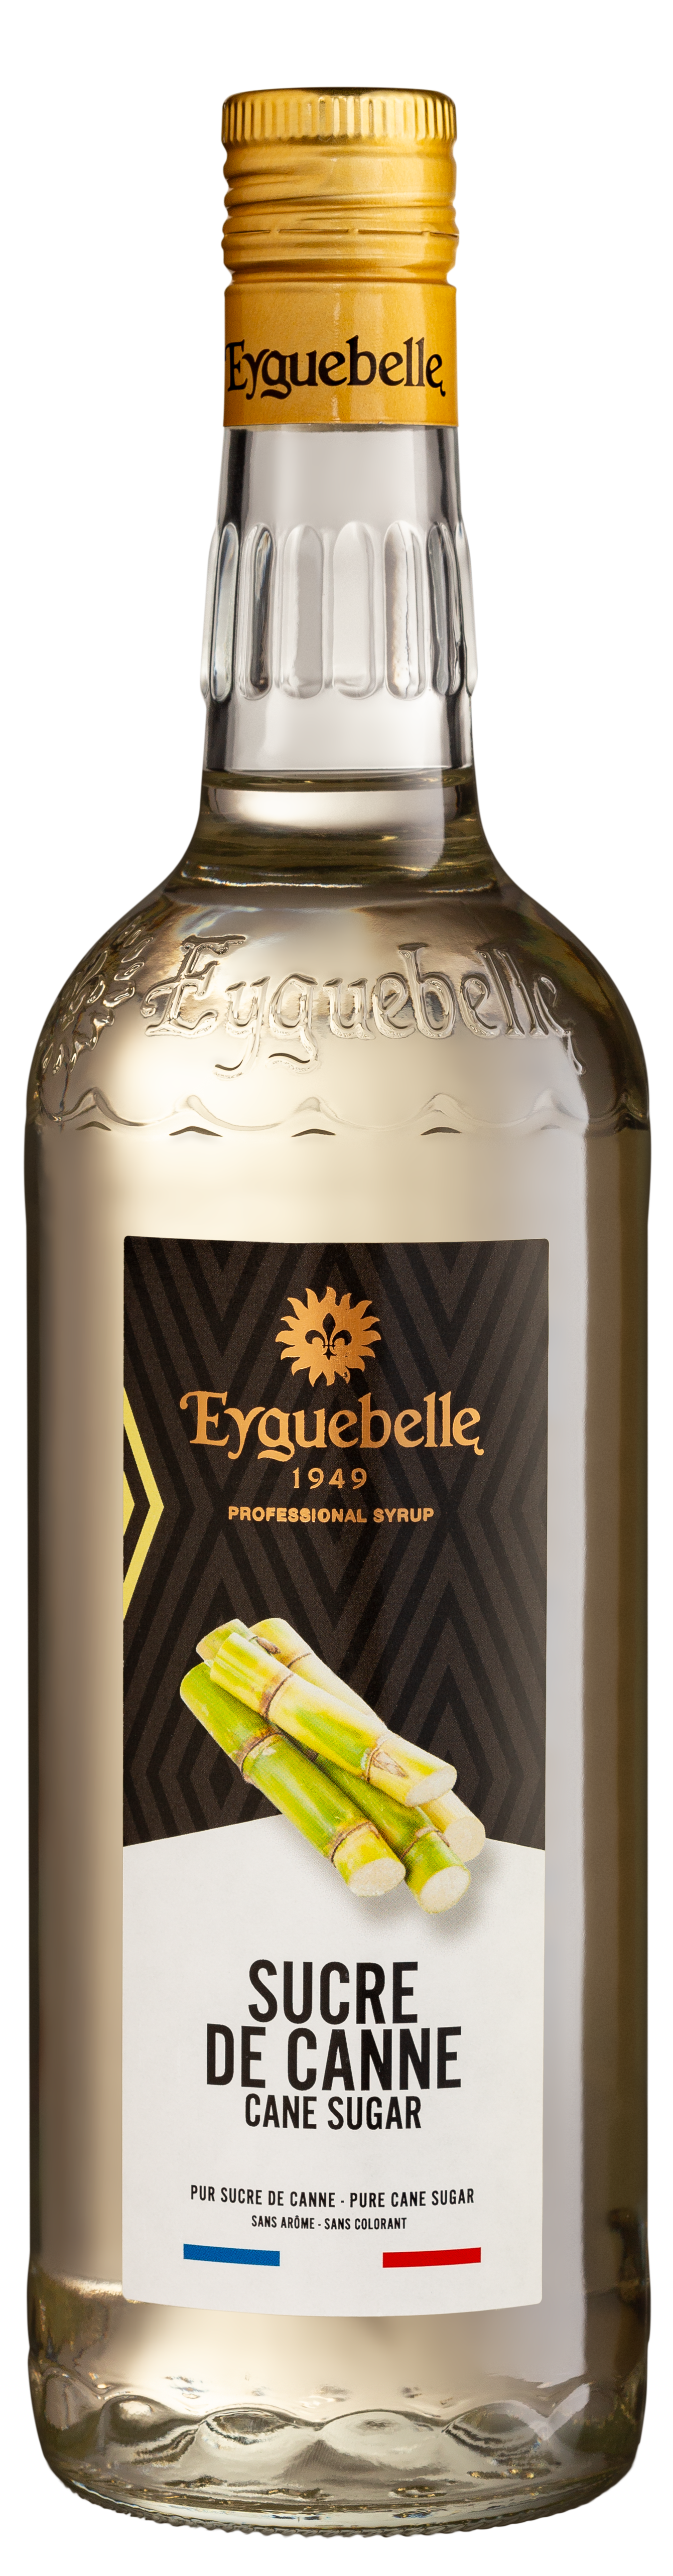 Distillerie Eyguebelle - Sirop de Vanille Spécial Bar - Vente en ligne